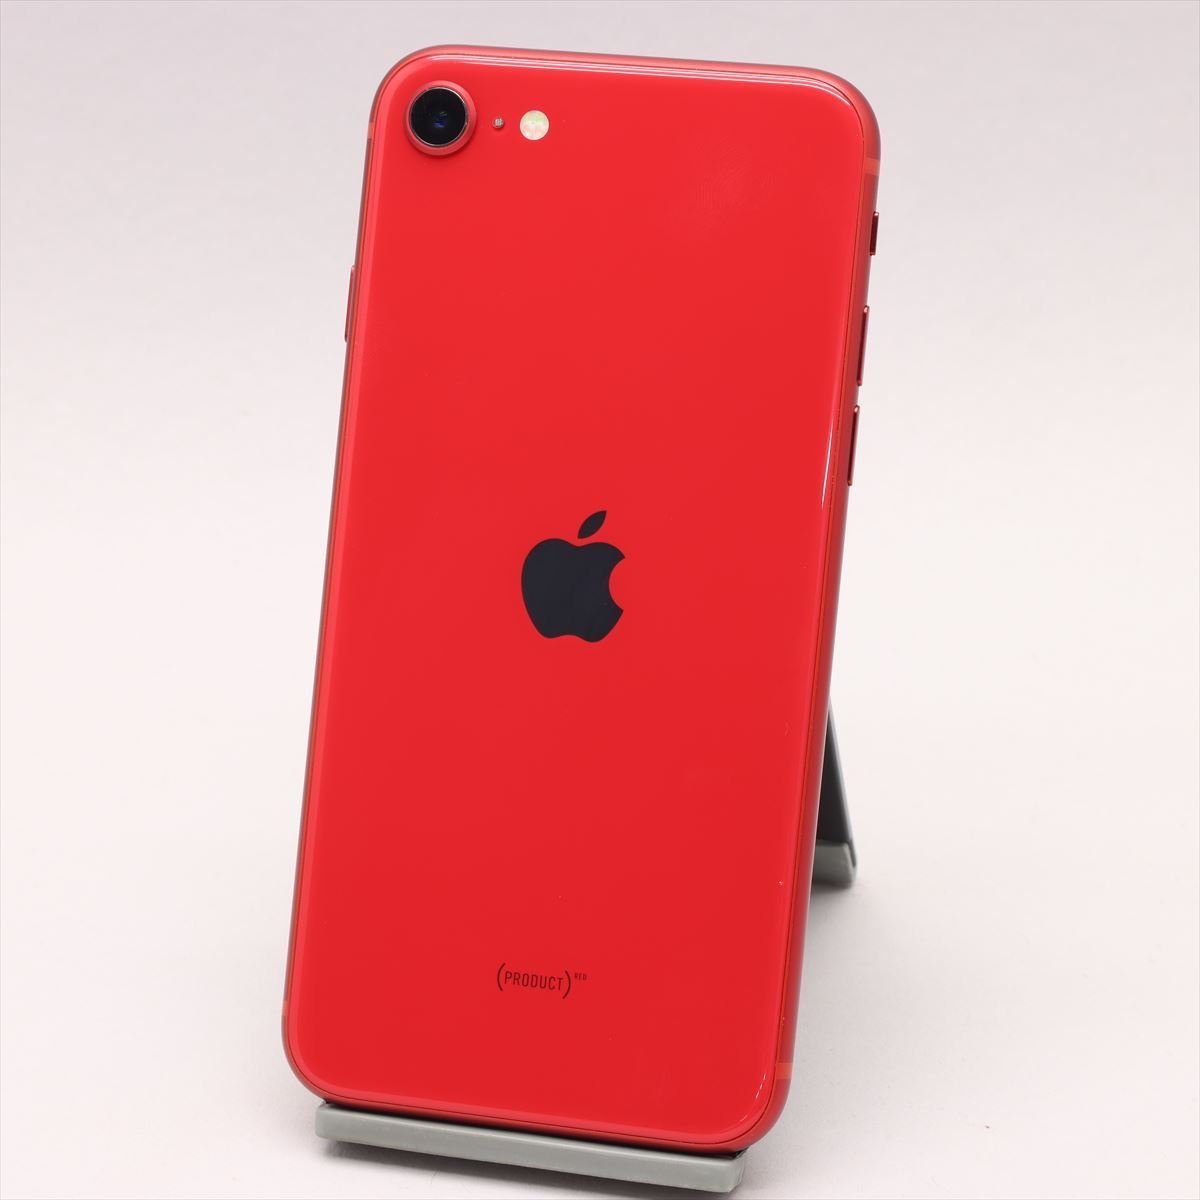 公式サイト Apple iPhoneSE 64GB (第2世代) (PRODUCT)RED A2296 MX9U2J